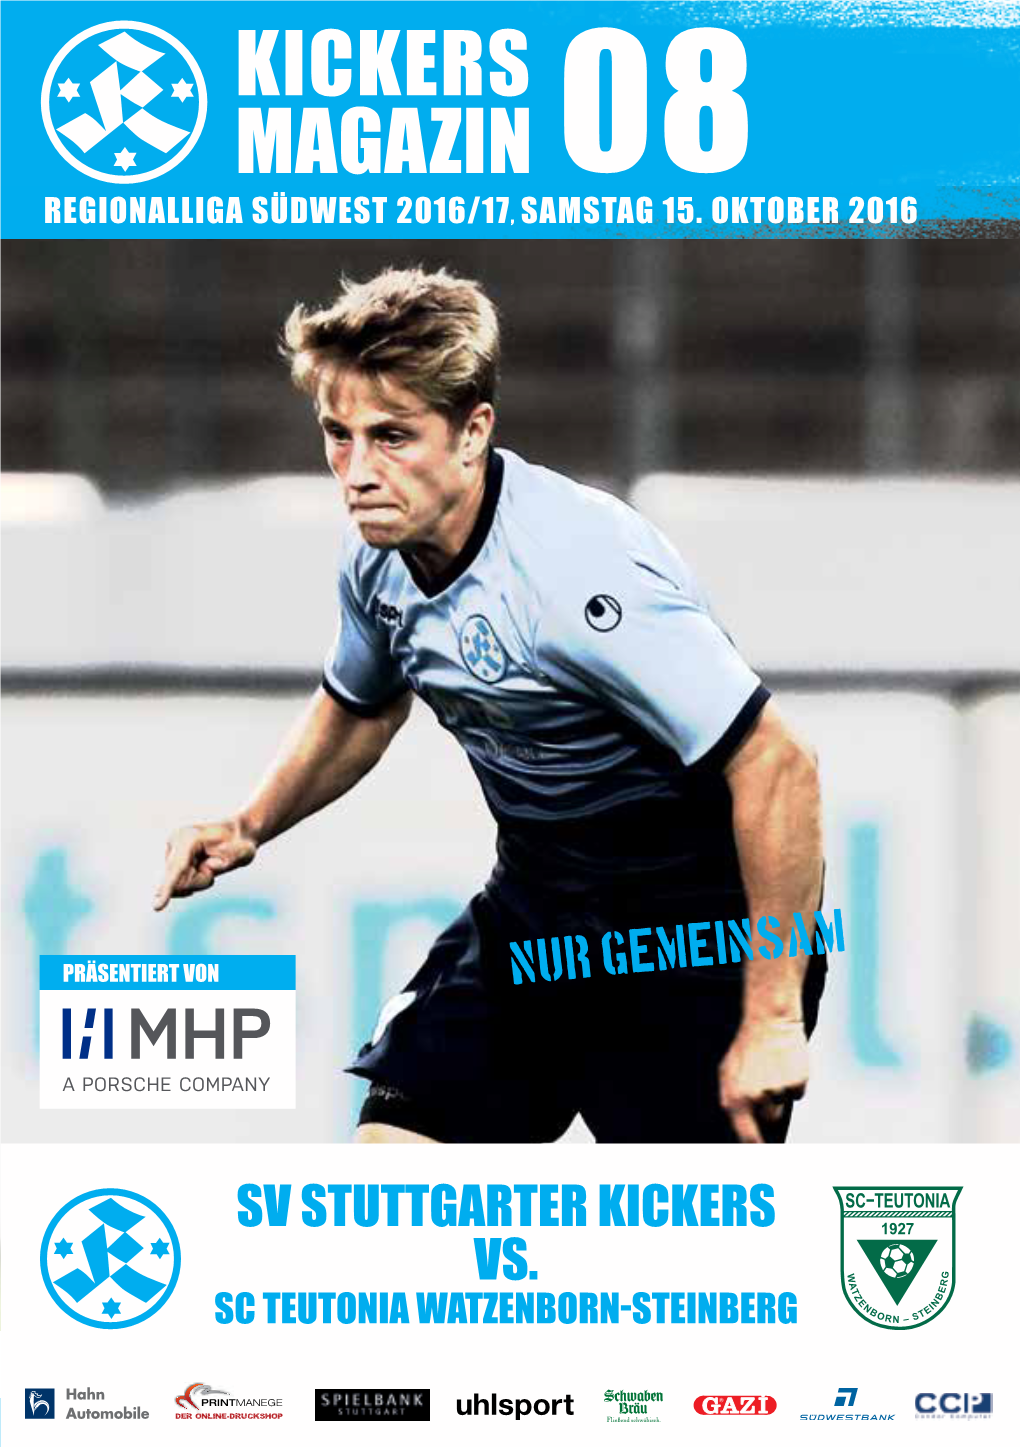 Kickers Magazin 08 Regionalliga Südwest 2016/17, Samstag 15